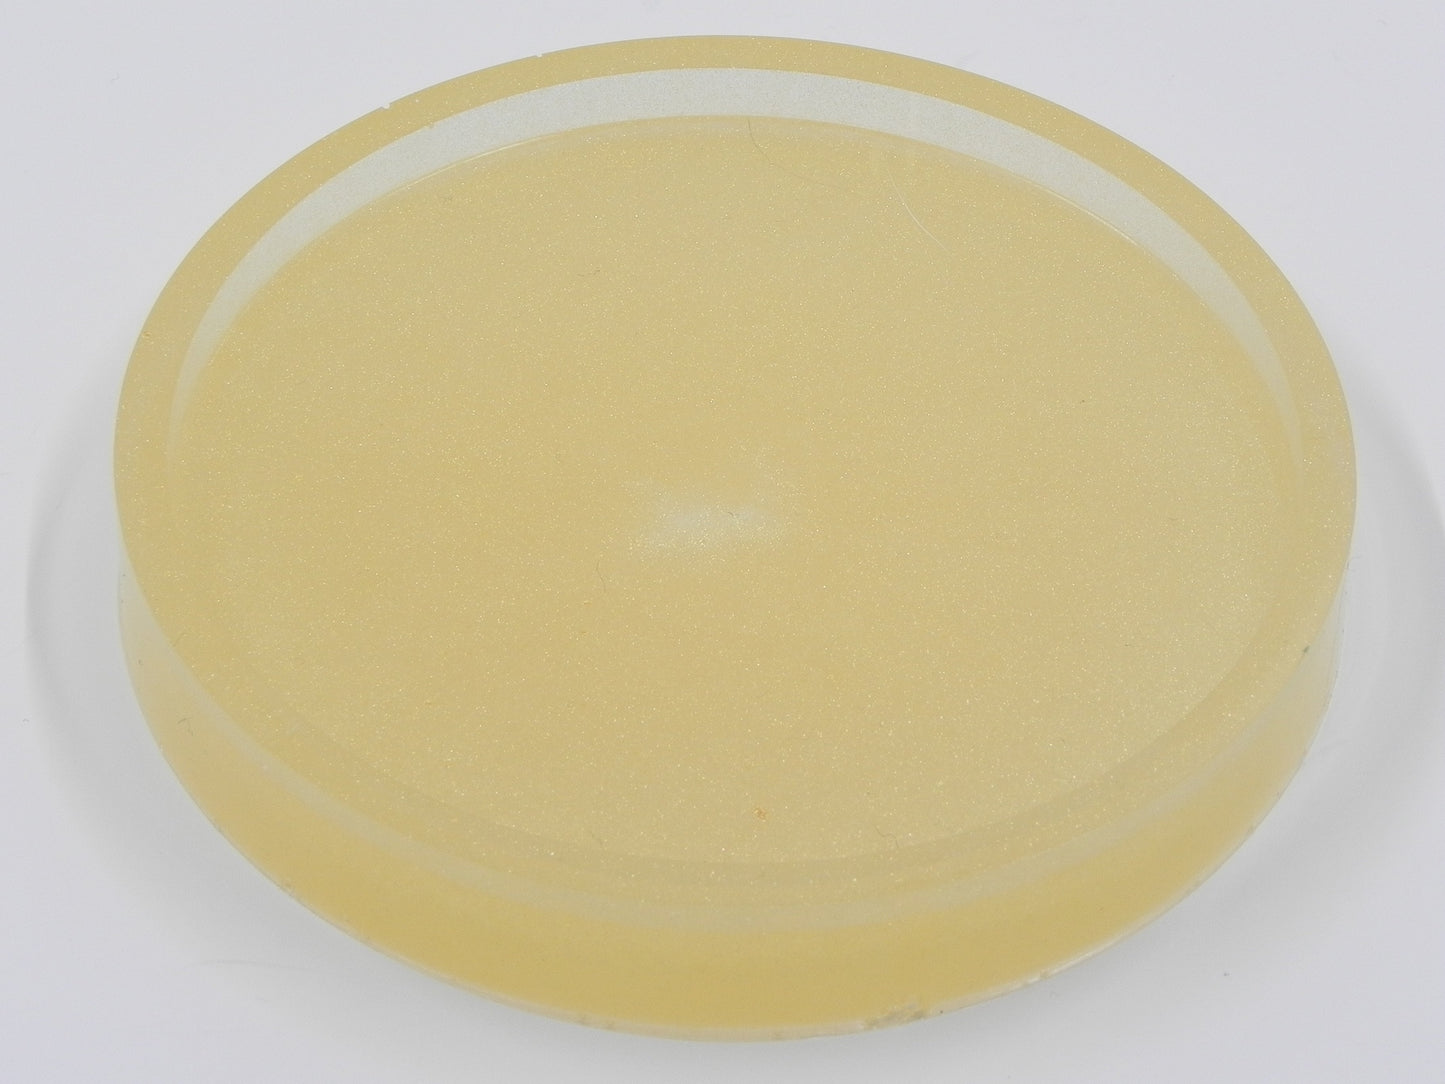 Display dish: Large Circle Sparkle Gold